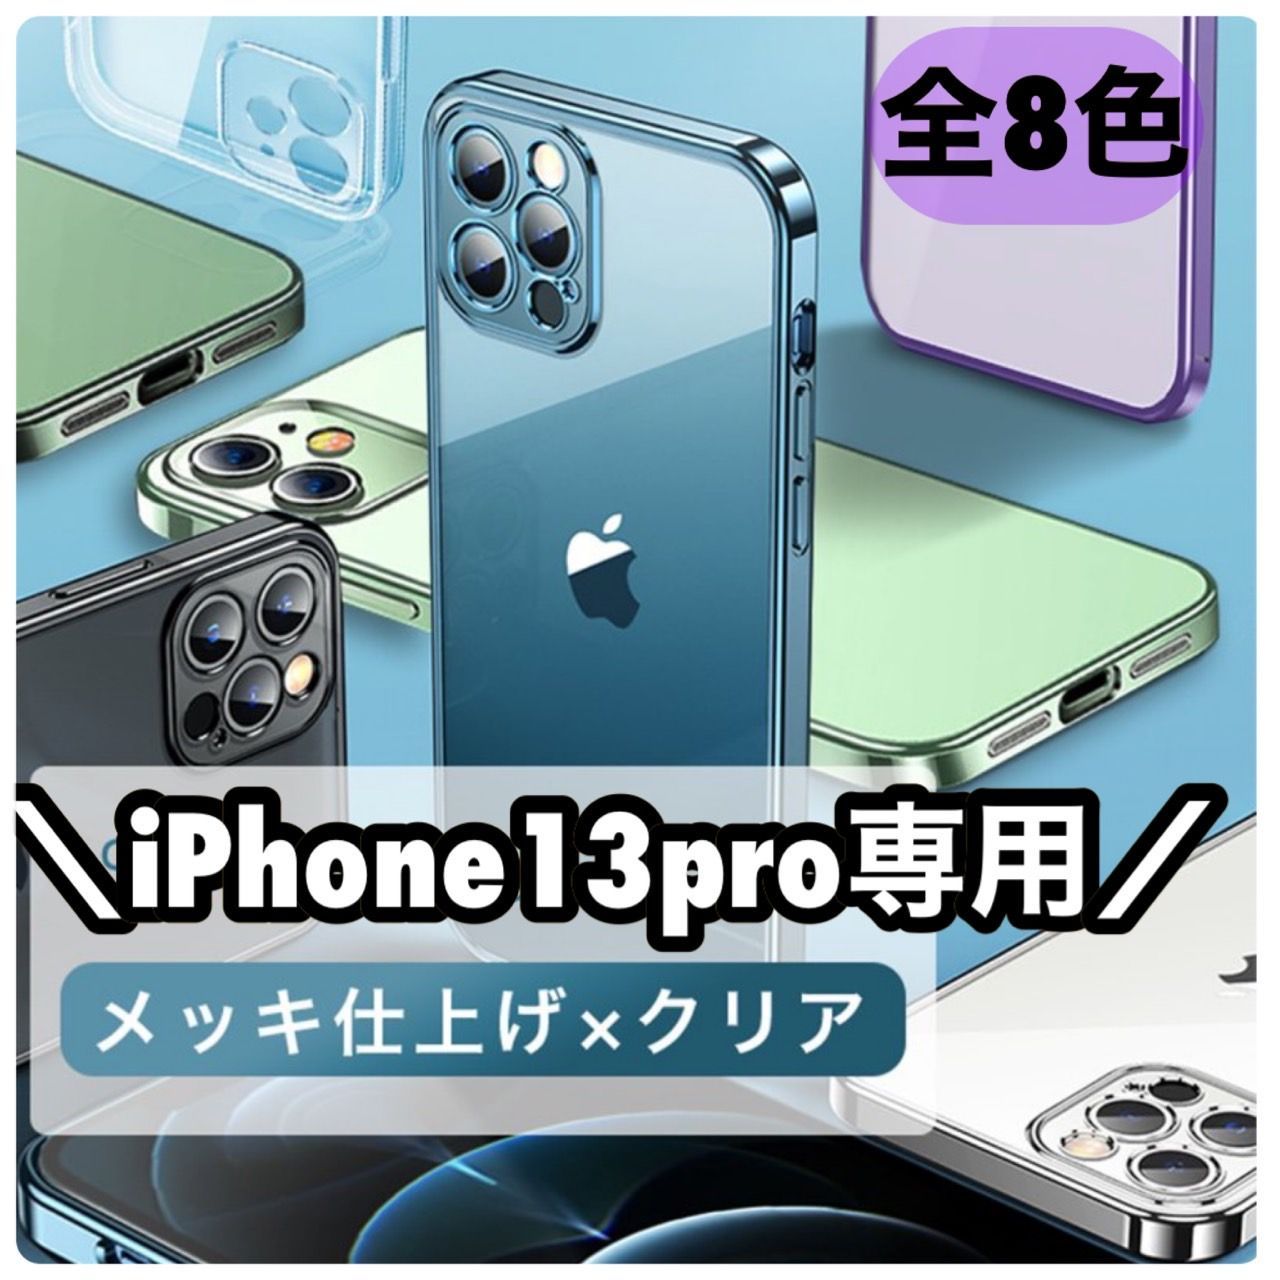 ★13pro専用ページ★シンプル メタリック 軽量 スマホ iphoneケース